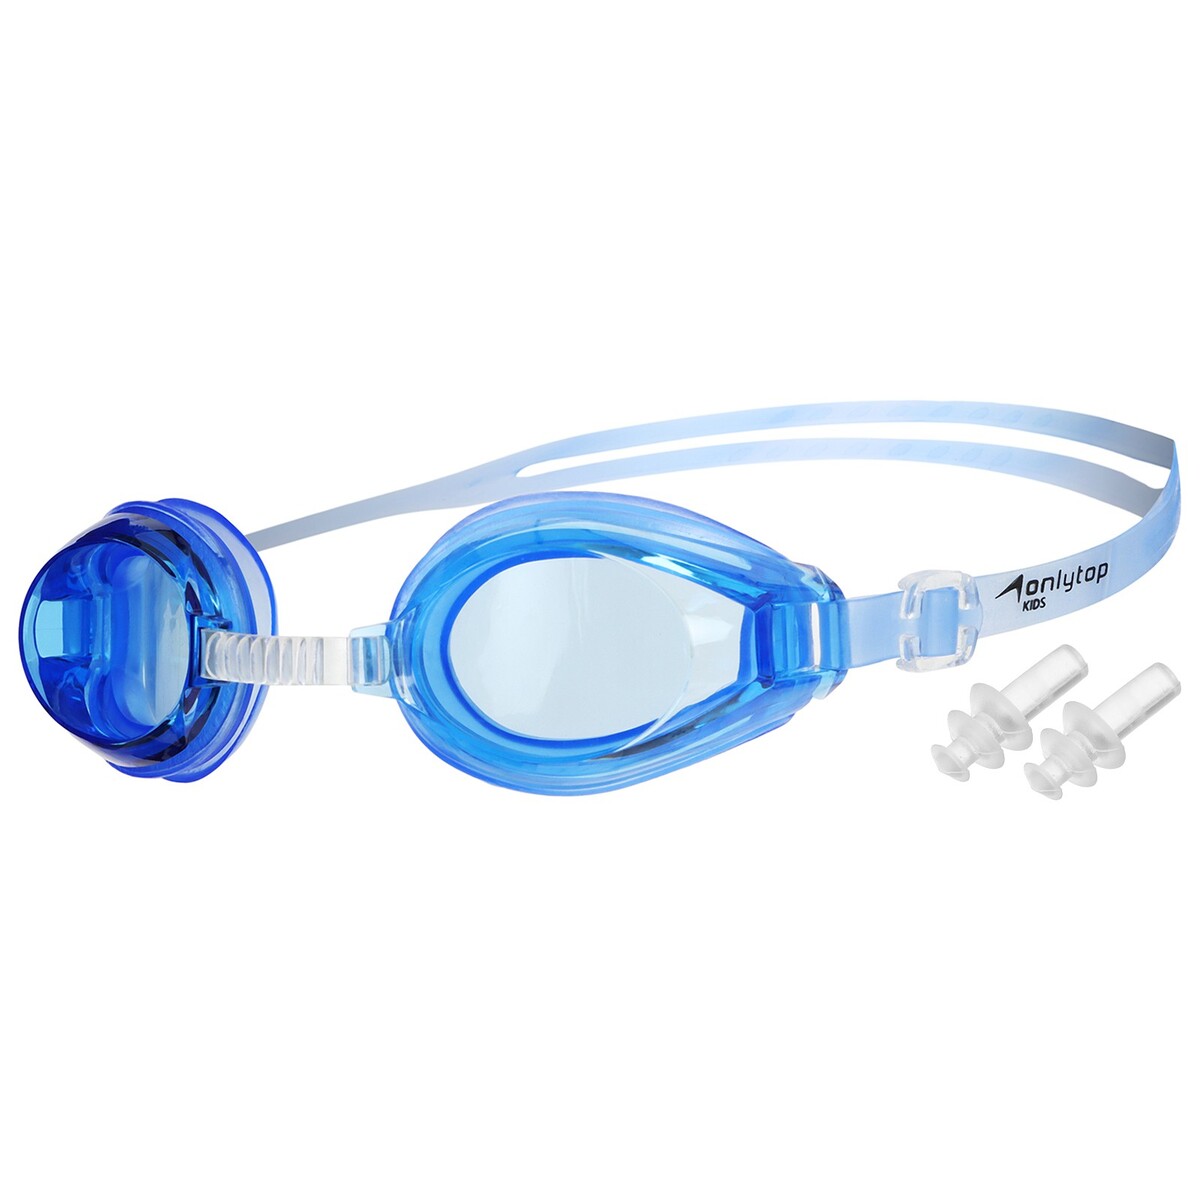 Очки для плавания onlytop, беруши, цвет синий очки для плавания onlytop беруши синий